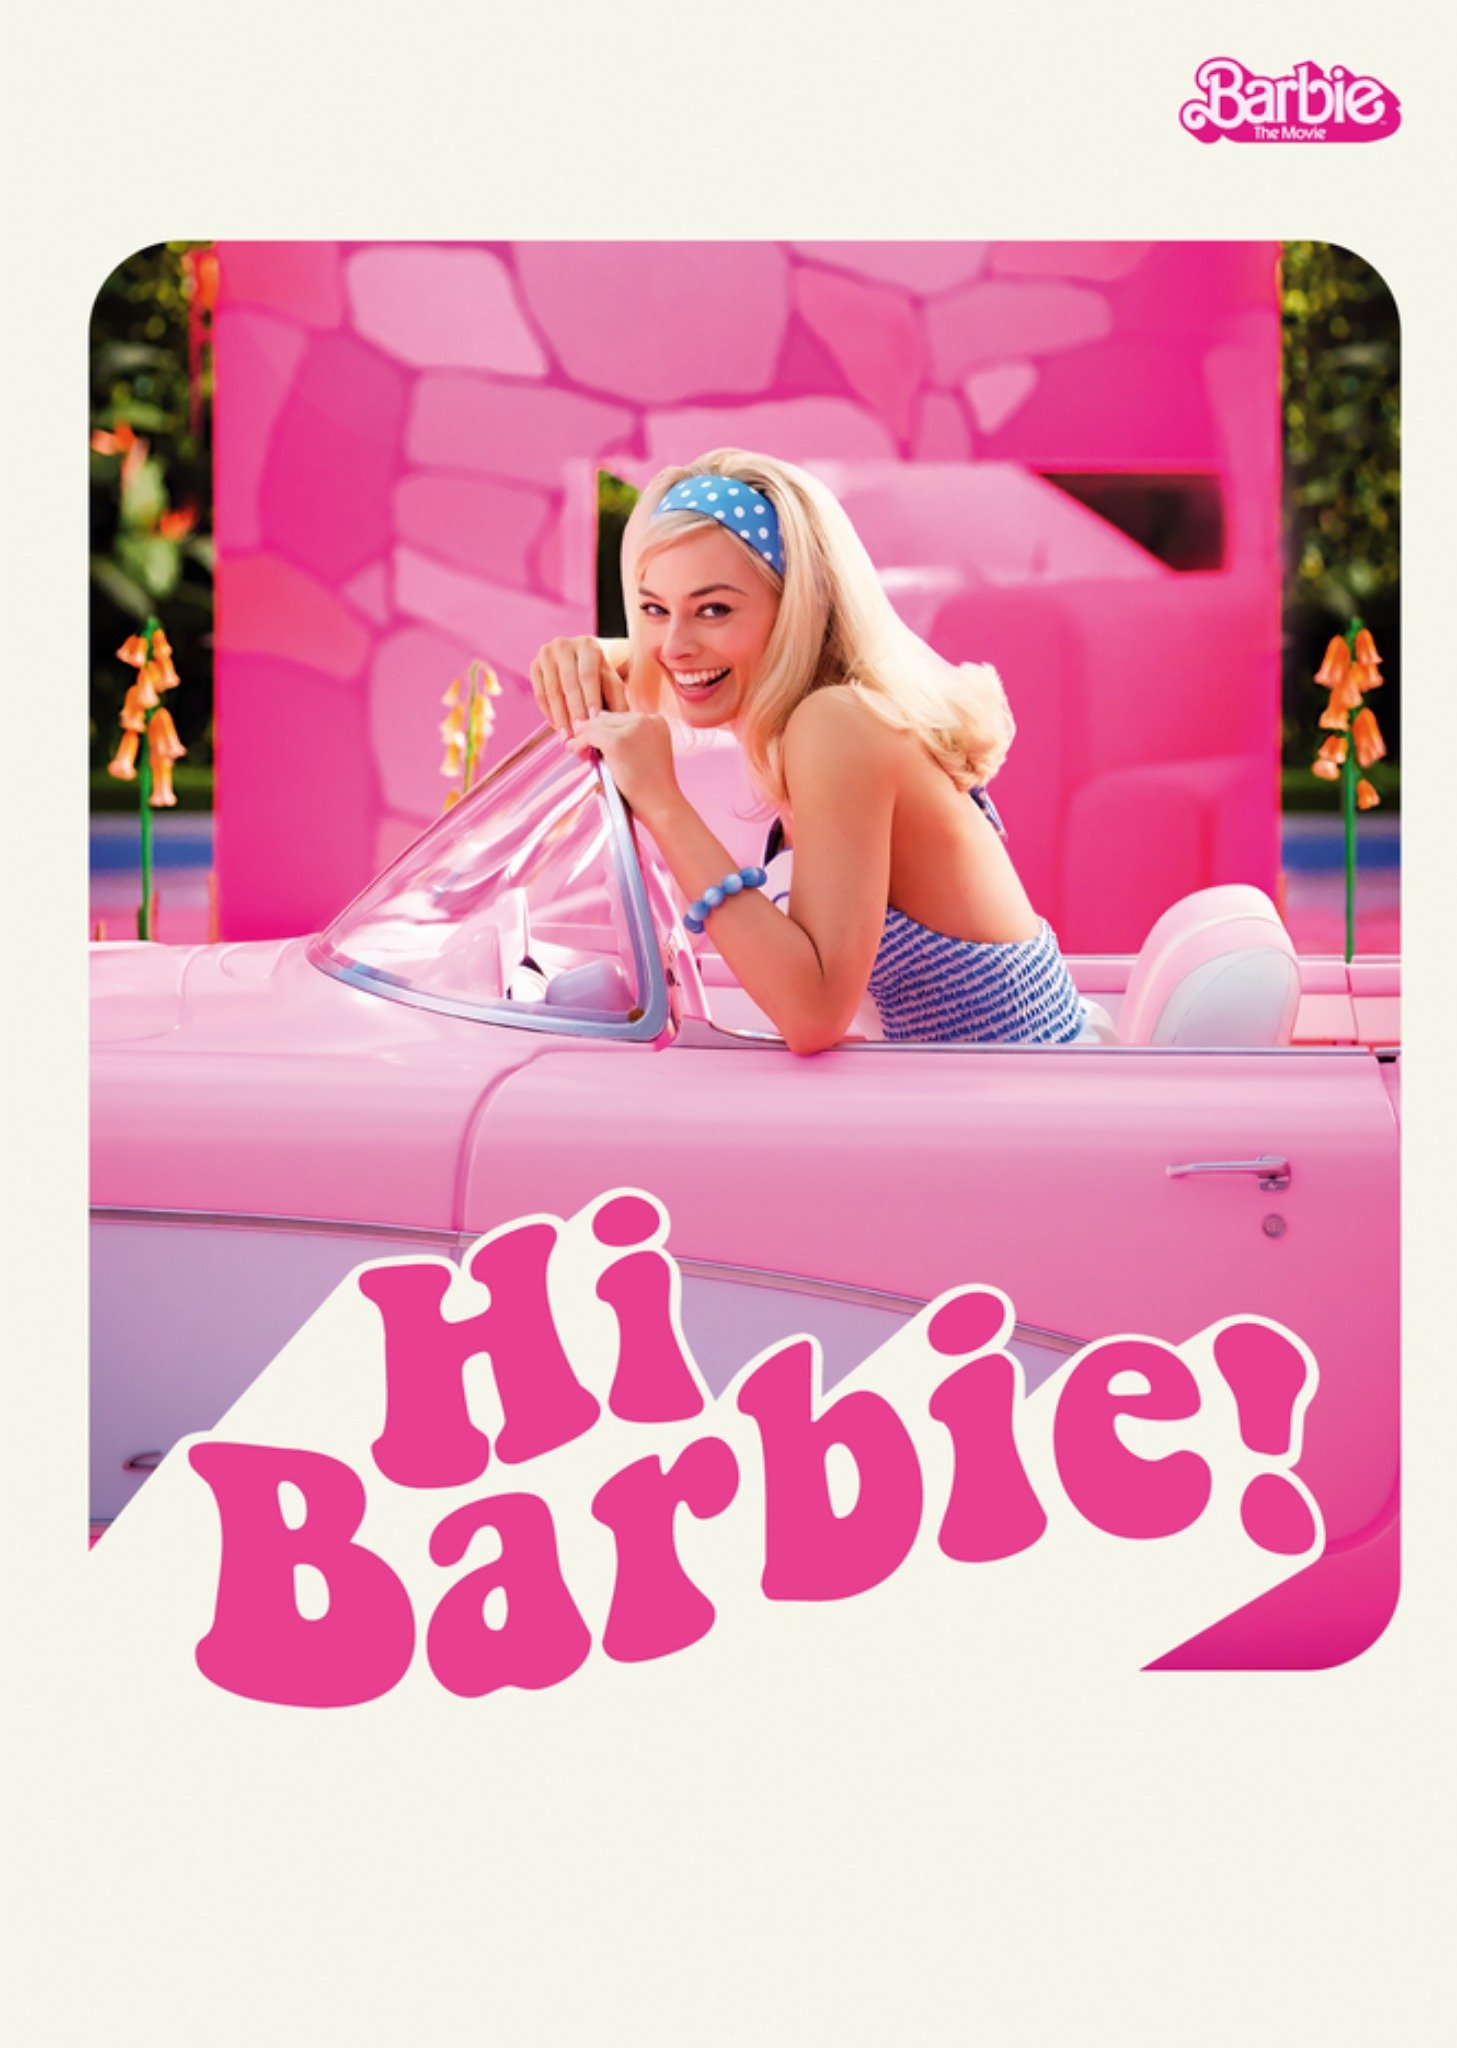 Barbie Movie Hi Barbie Greetings Card Ecard